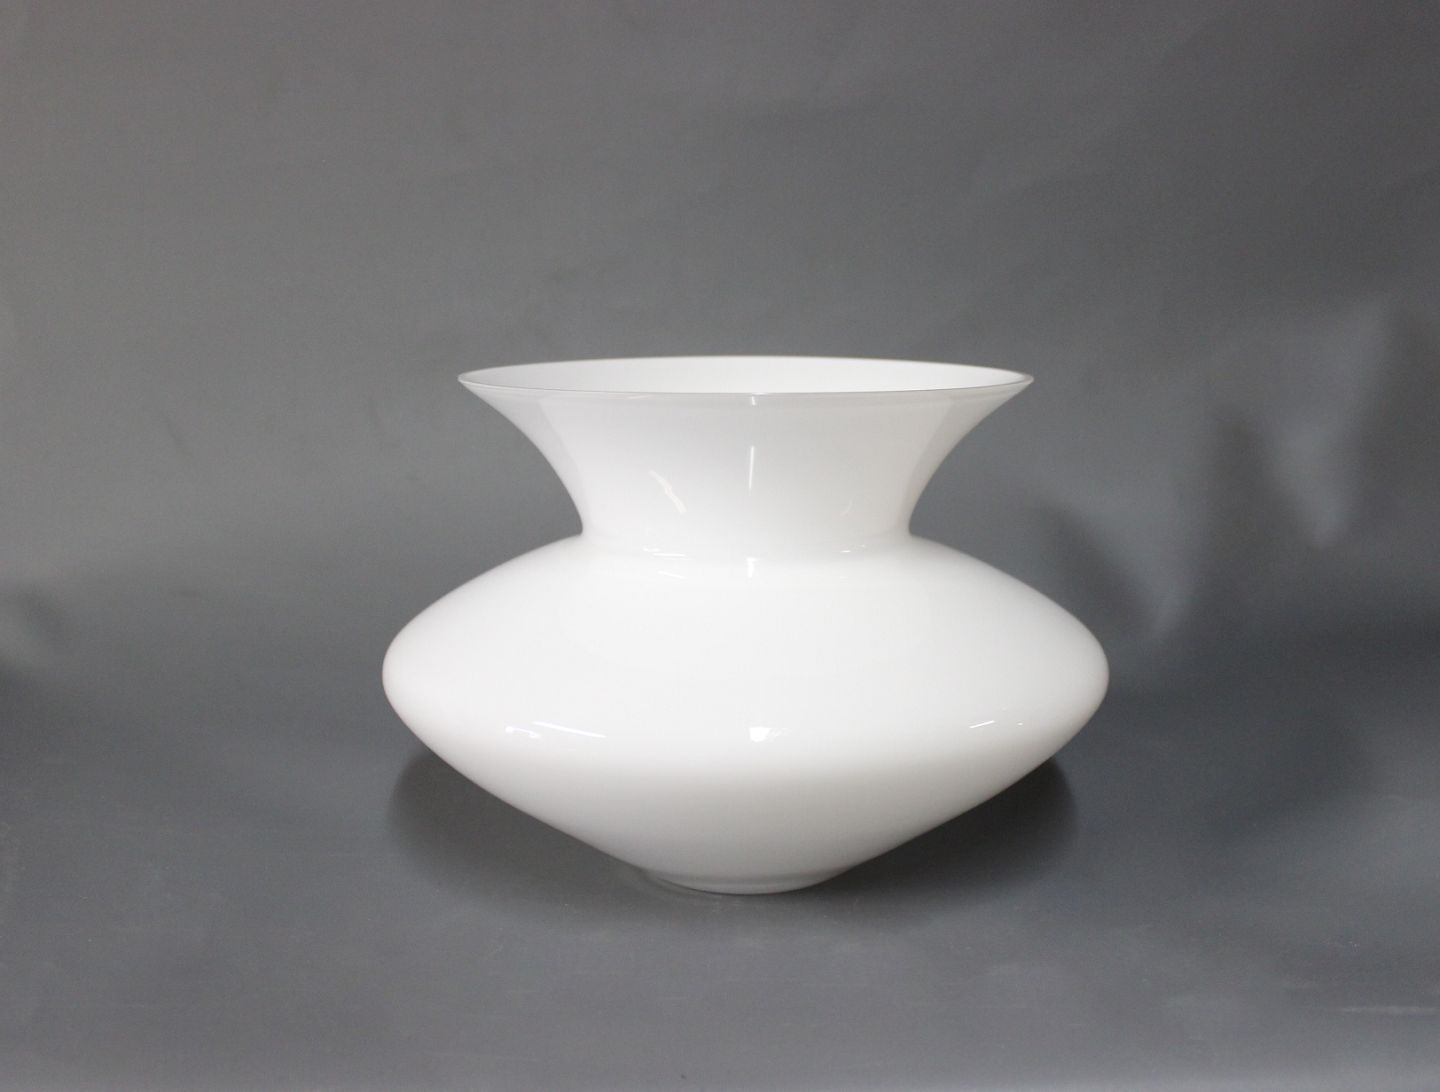 Es Bemærk venligst bånd KAD ringen - Beautiful White glass vase from Rosendahl. * 5000m2 showroom.  - Beautiful White glass vase from Rosendahl. * 5000m2 showroom.